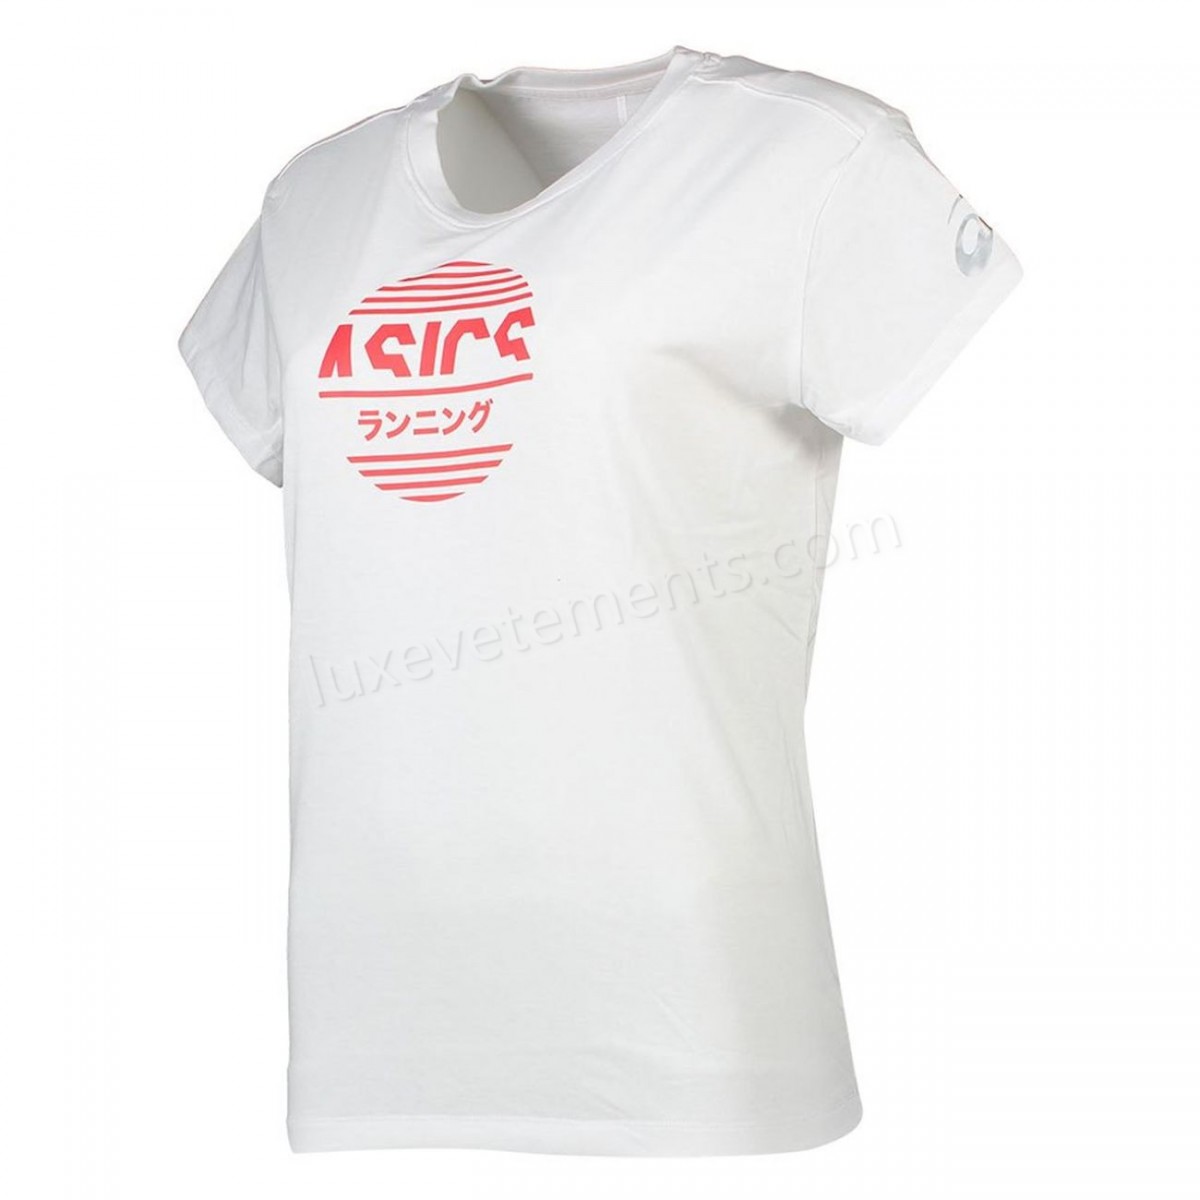 Asics-Fitness femme ASICS T-shirt femme Asics Tokyo Graphic Vente en ligne - -1